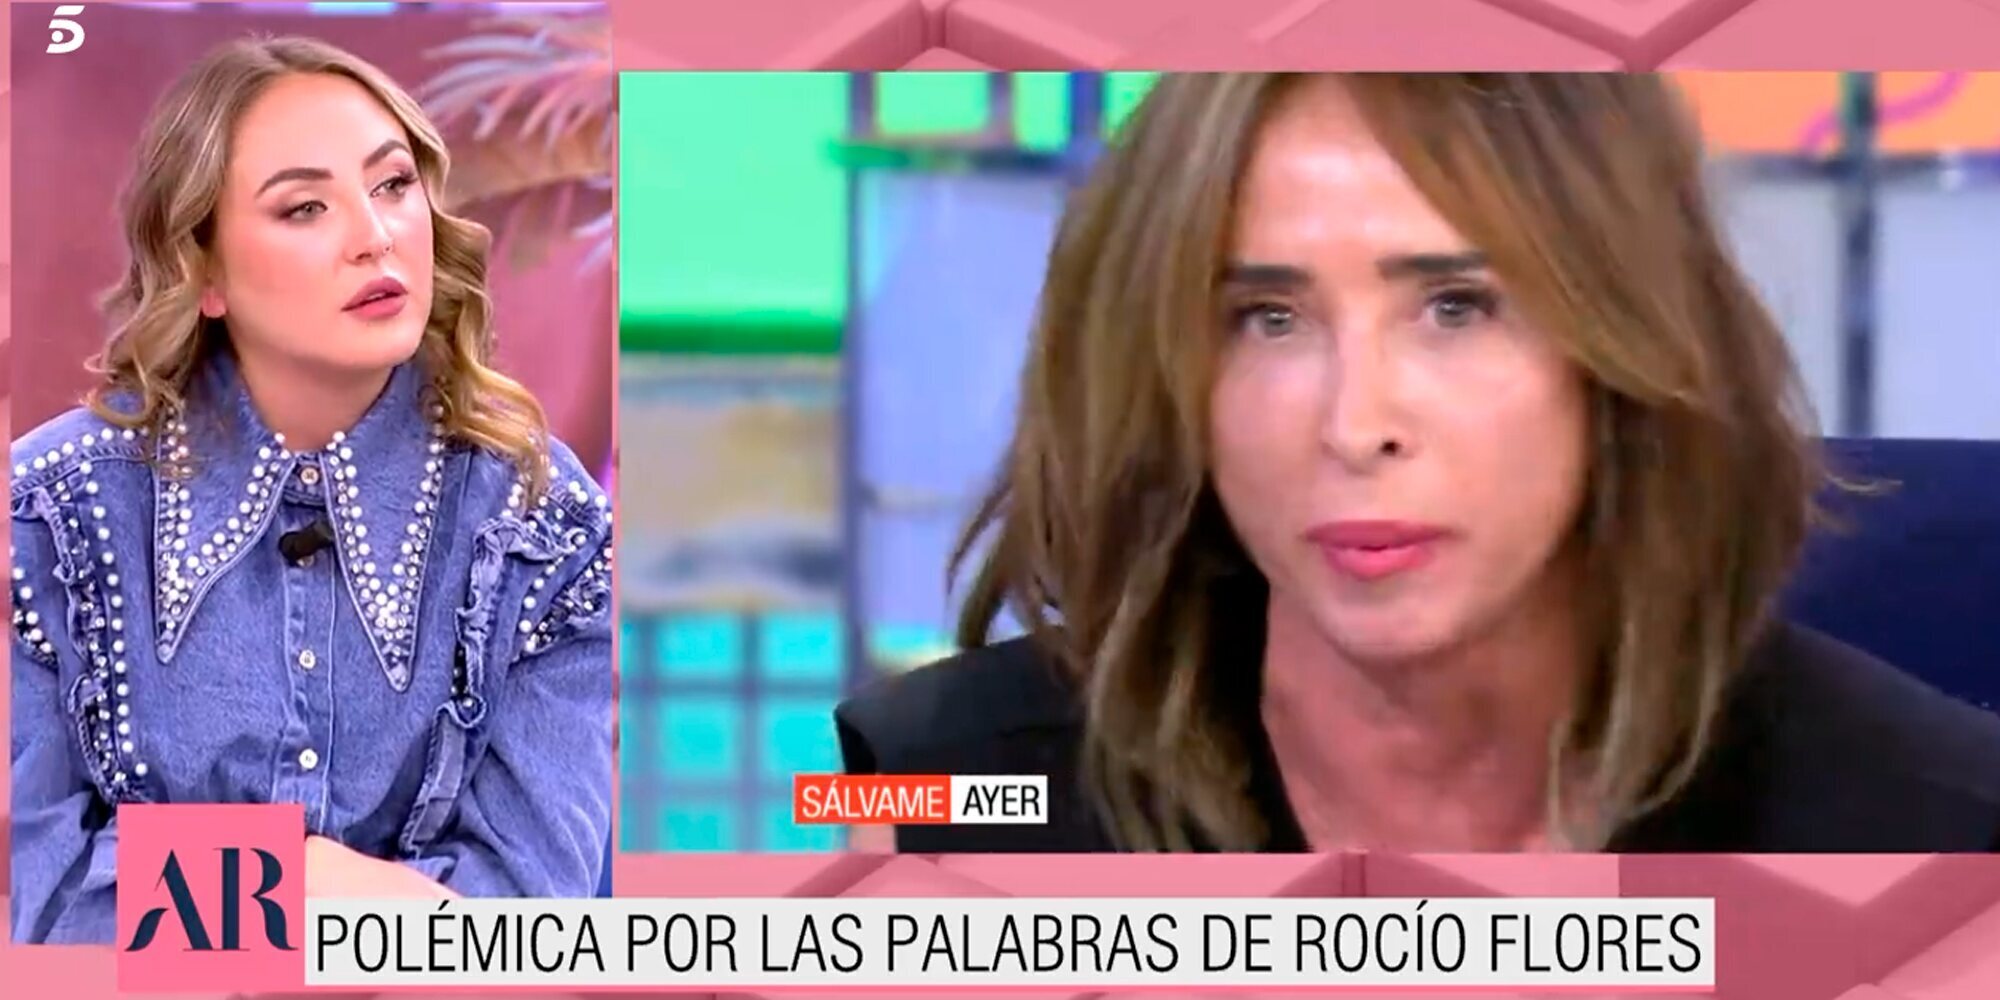 Rocío Flores: "María Patiño no tiene credibilidad, está denunciada y solo voy a responder en un juzgado"